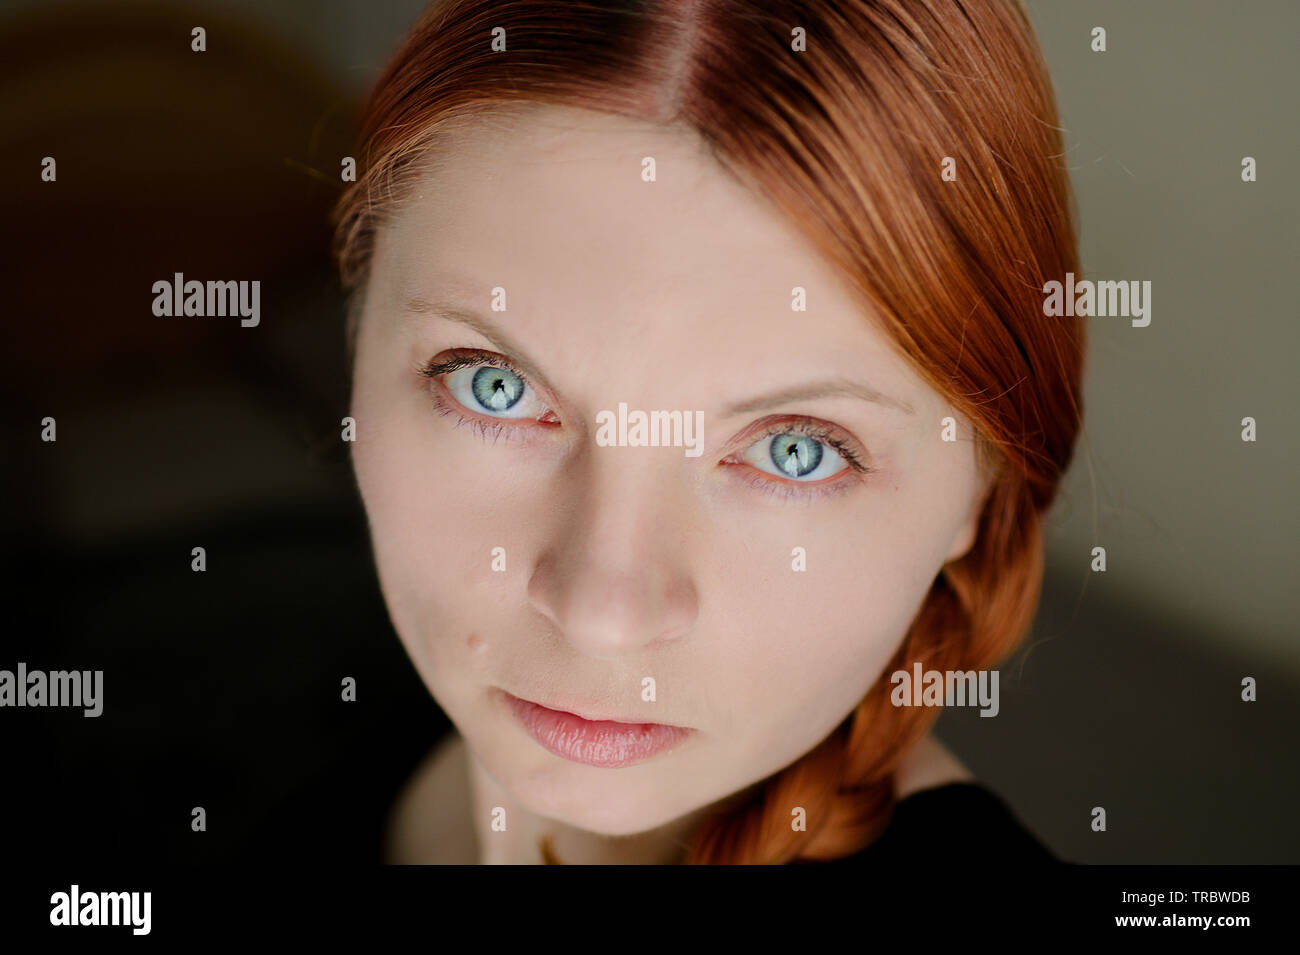 Visage d'une jeune fille qui a des cheveux rouge un grands yeux bleus. Femme polonaise. Banque D'Images